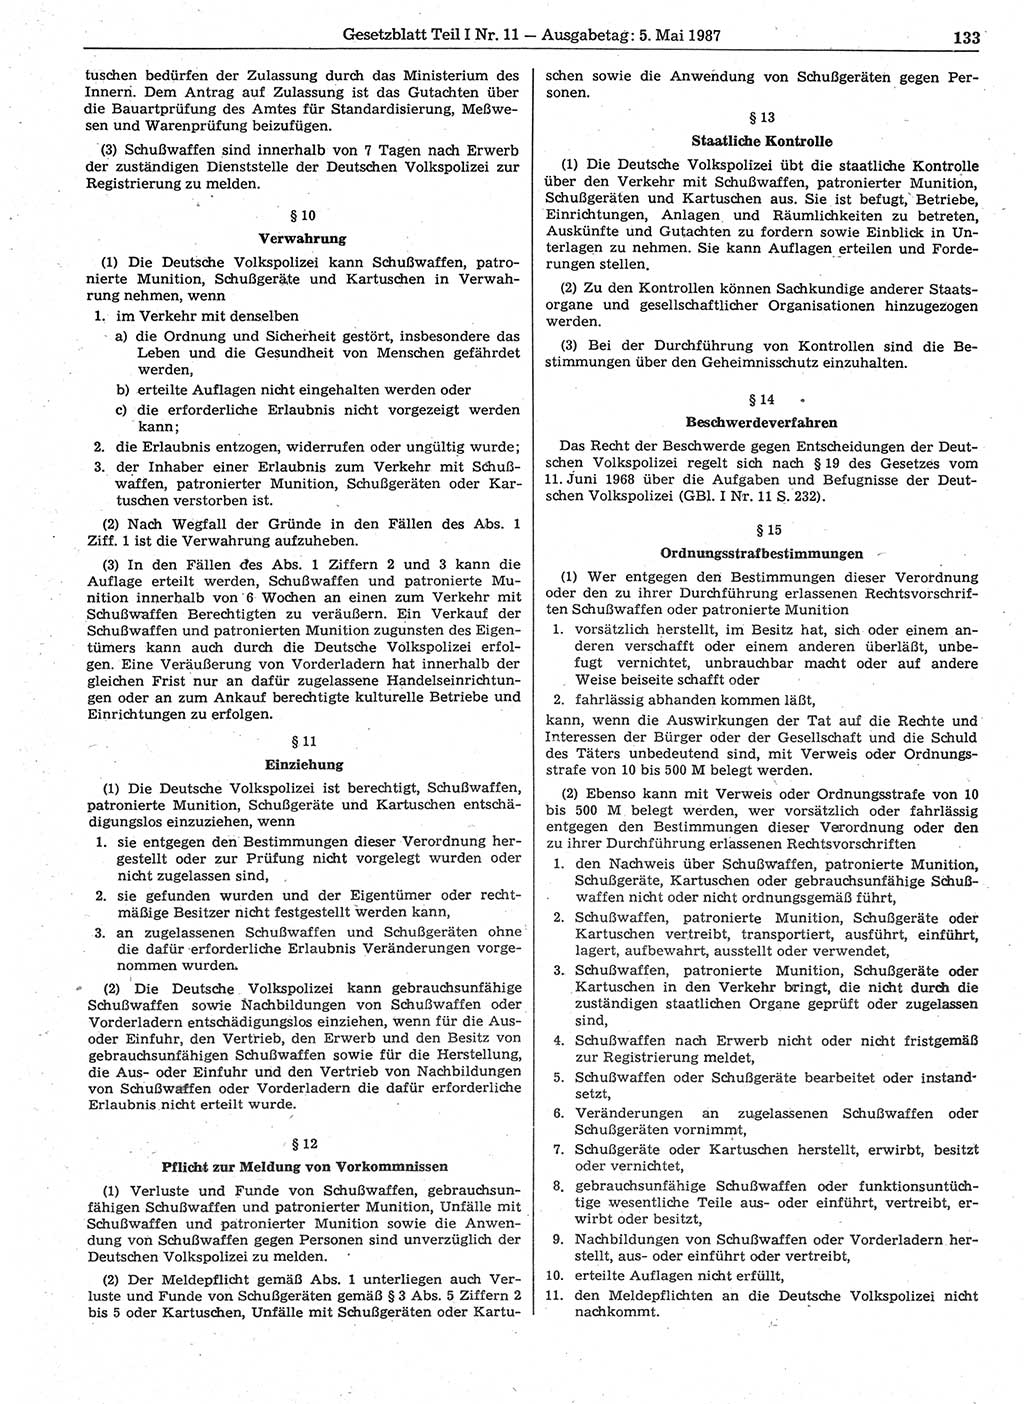 Gesetzblatt (GBl.) der Deutschen Demokratischen Republik (DDR) Teil Ⅰ 1987, Seite 133 (GBl. DDR Ⅰ 1987, S. 133)